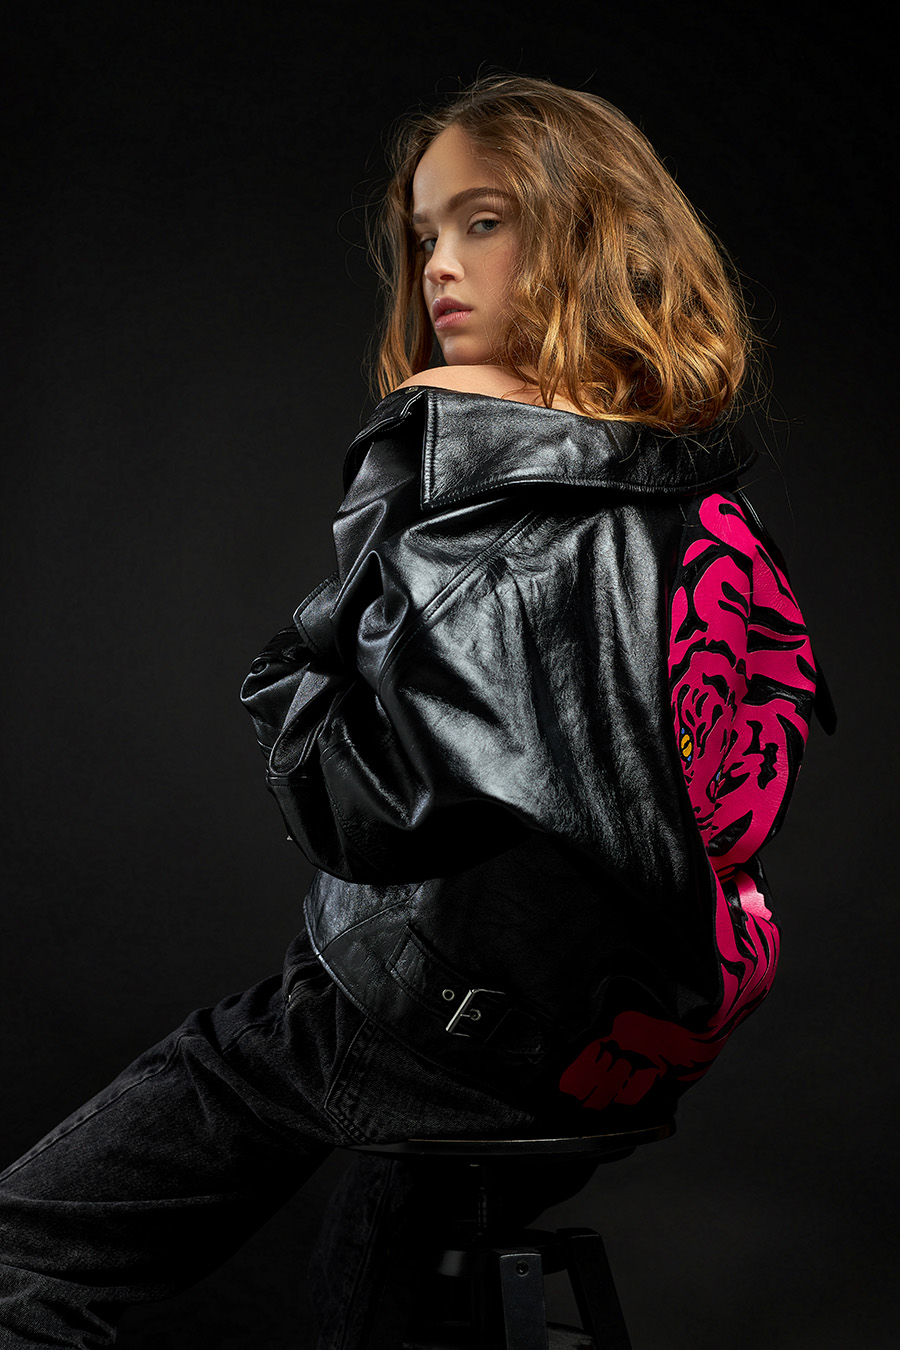 model-test daria pink tiger look by Alex Kipenko